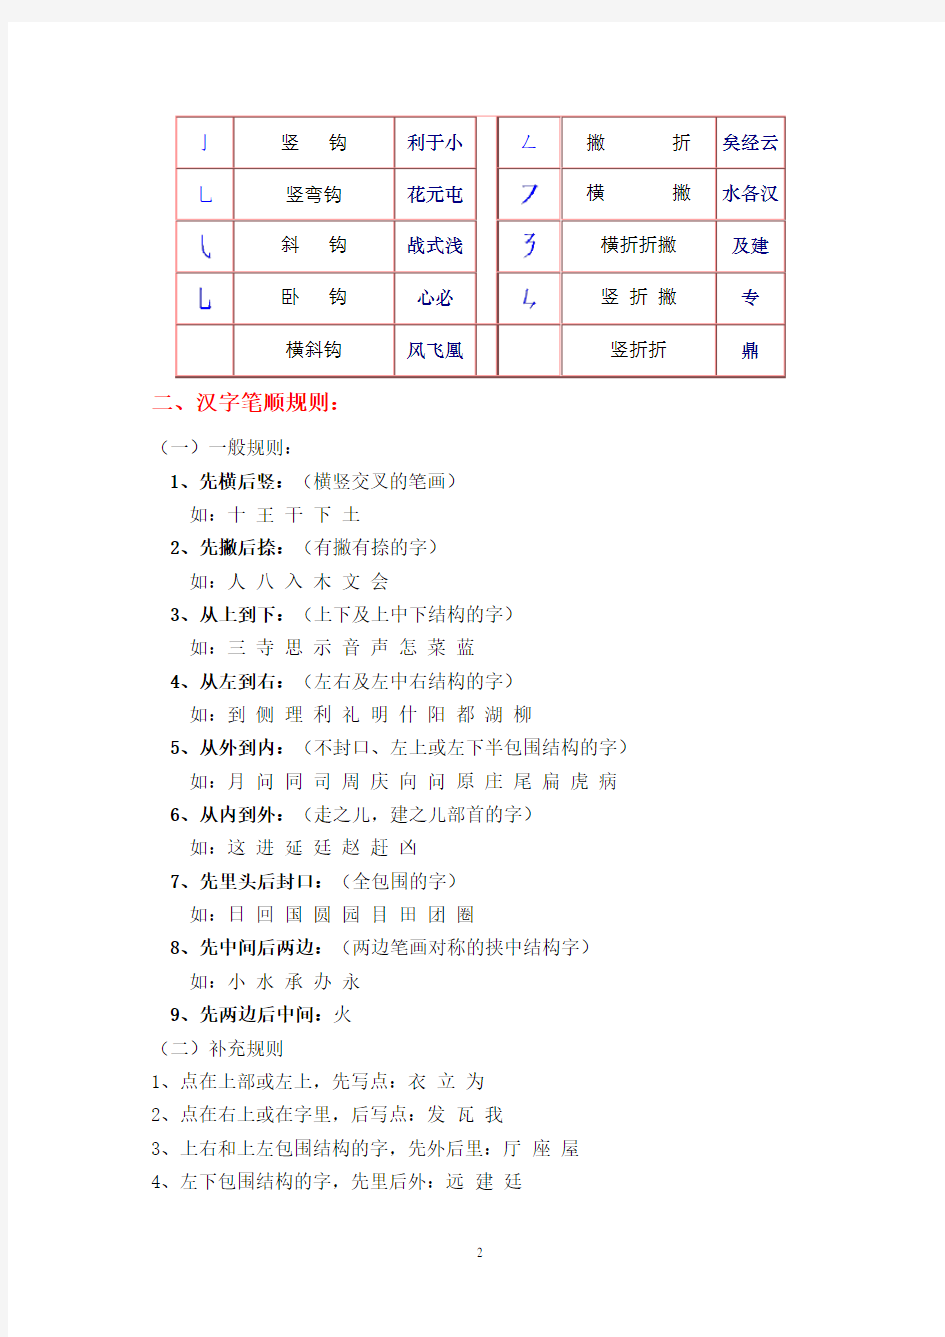 汉字笔画名称、笔顺规则、偏旁部首和间架结构